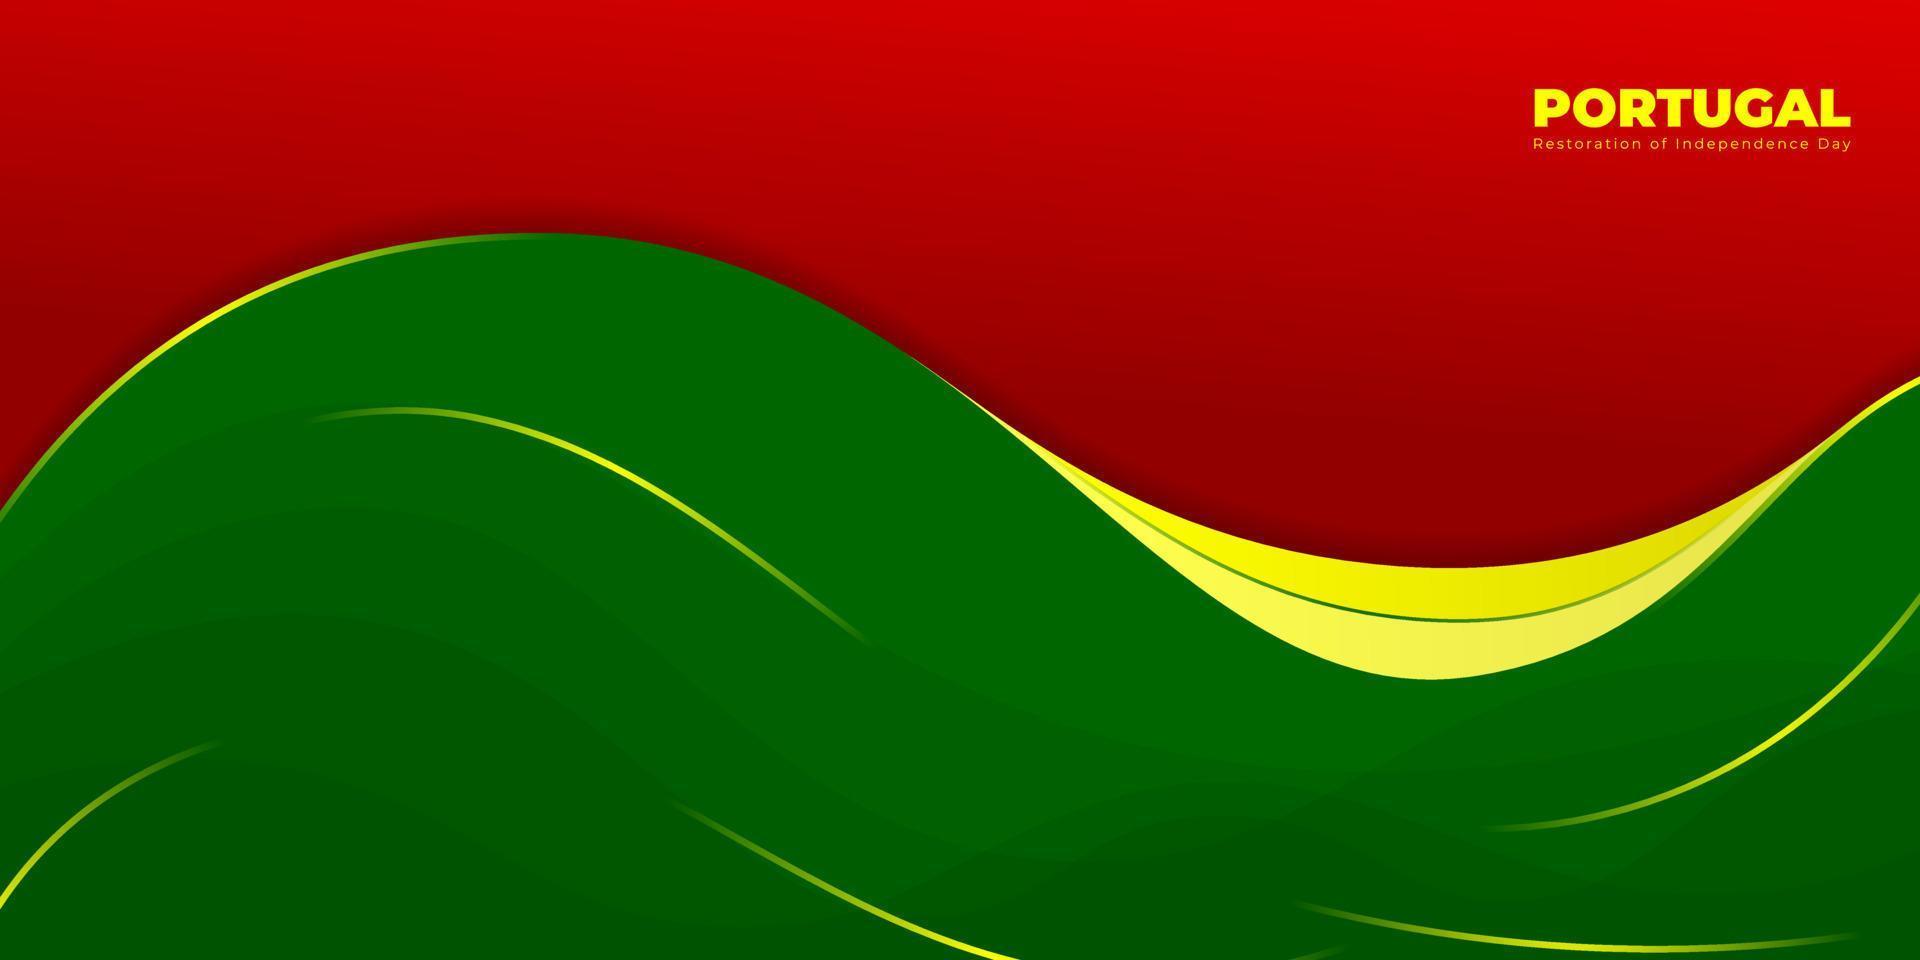 ondeando fondo abstracto rojo y verde con diseño de líneas amarillas. diseño de plantilla del día de la independencia de restauración de portugal. vector